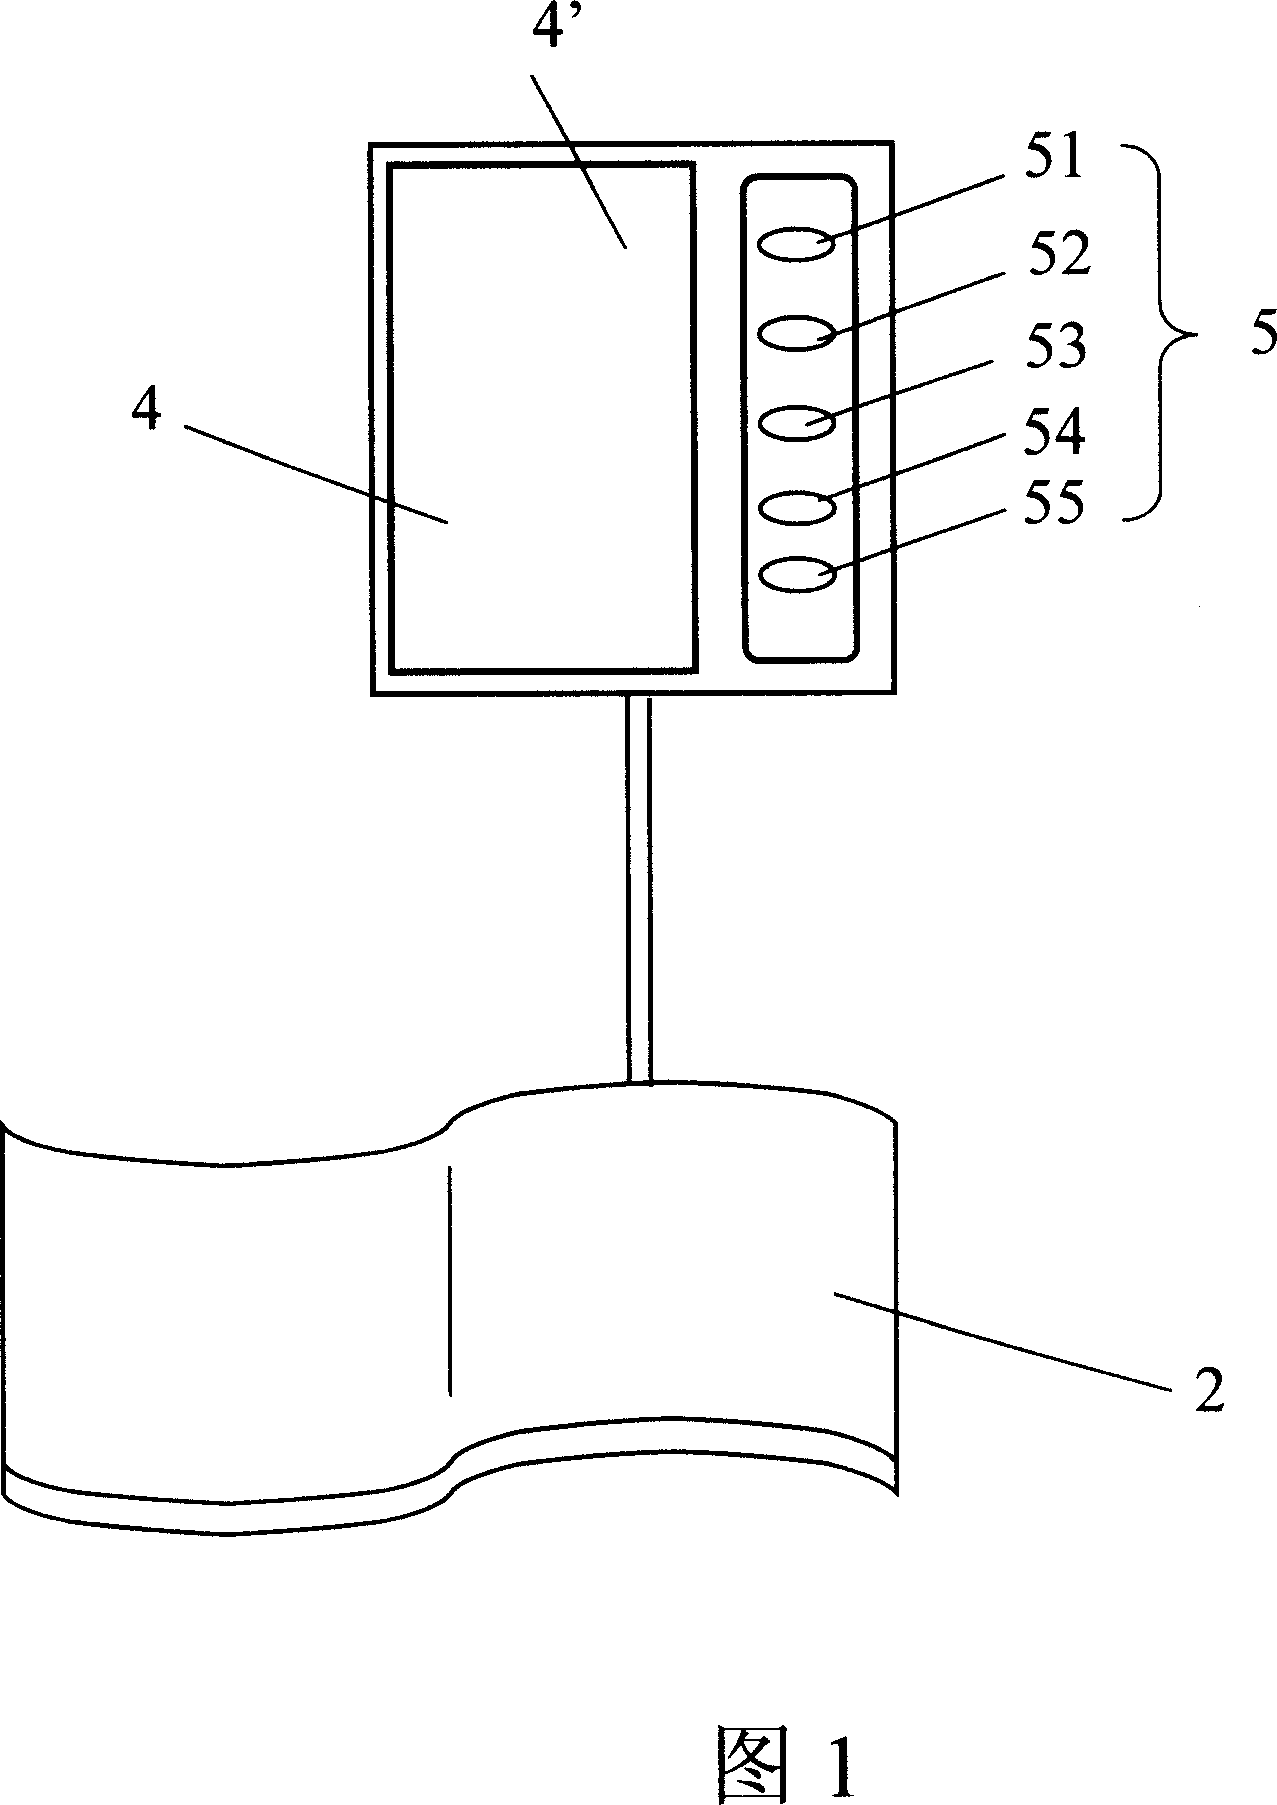 Electronic sphygmomanometer